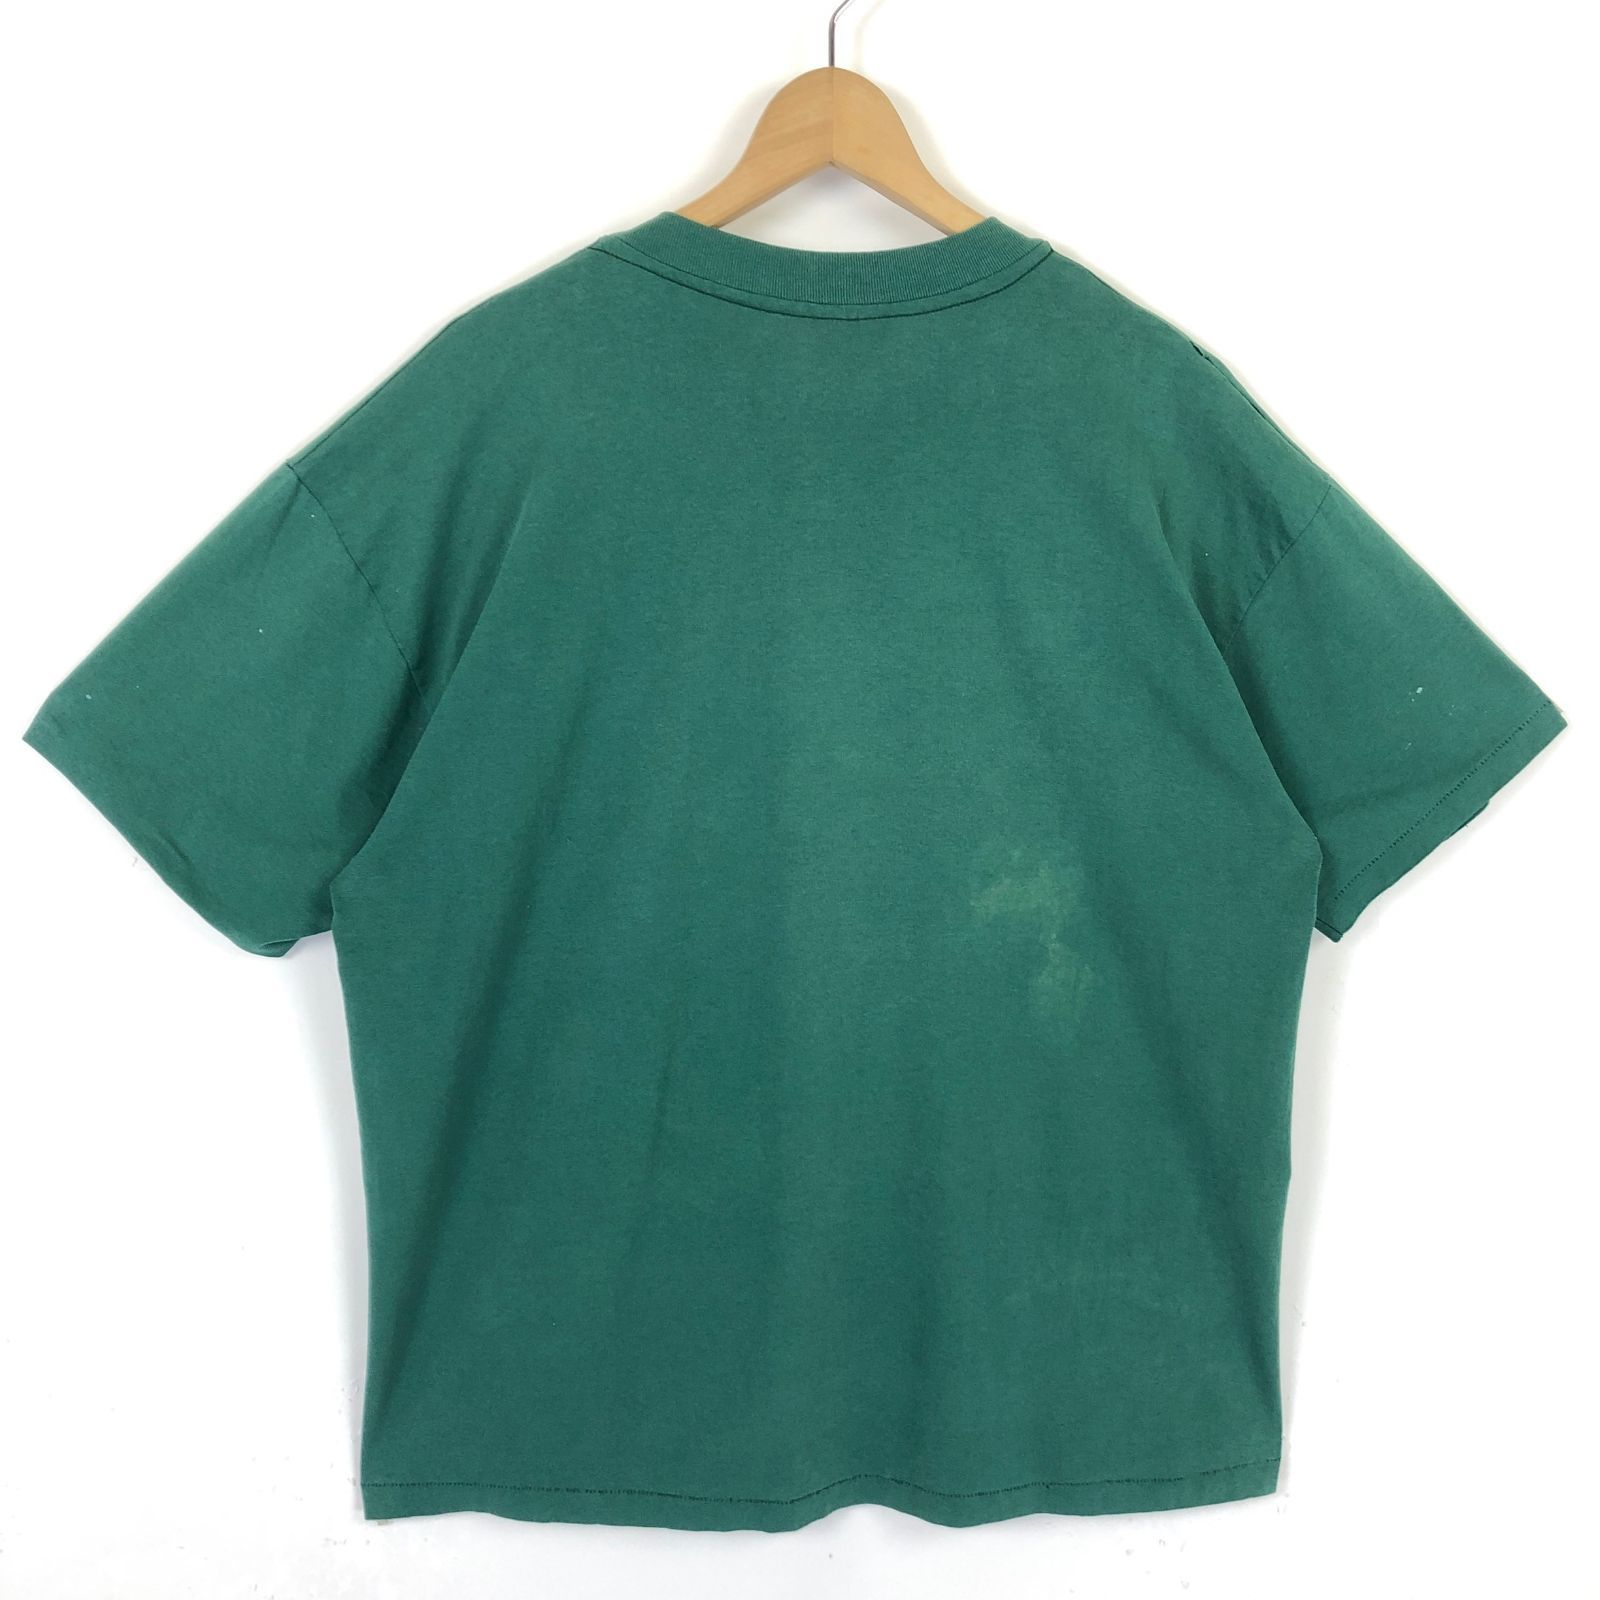 Tシャツ アニマル柄 アライグマ 80年代 古着 ヴィンテージ 緑 XL 